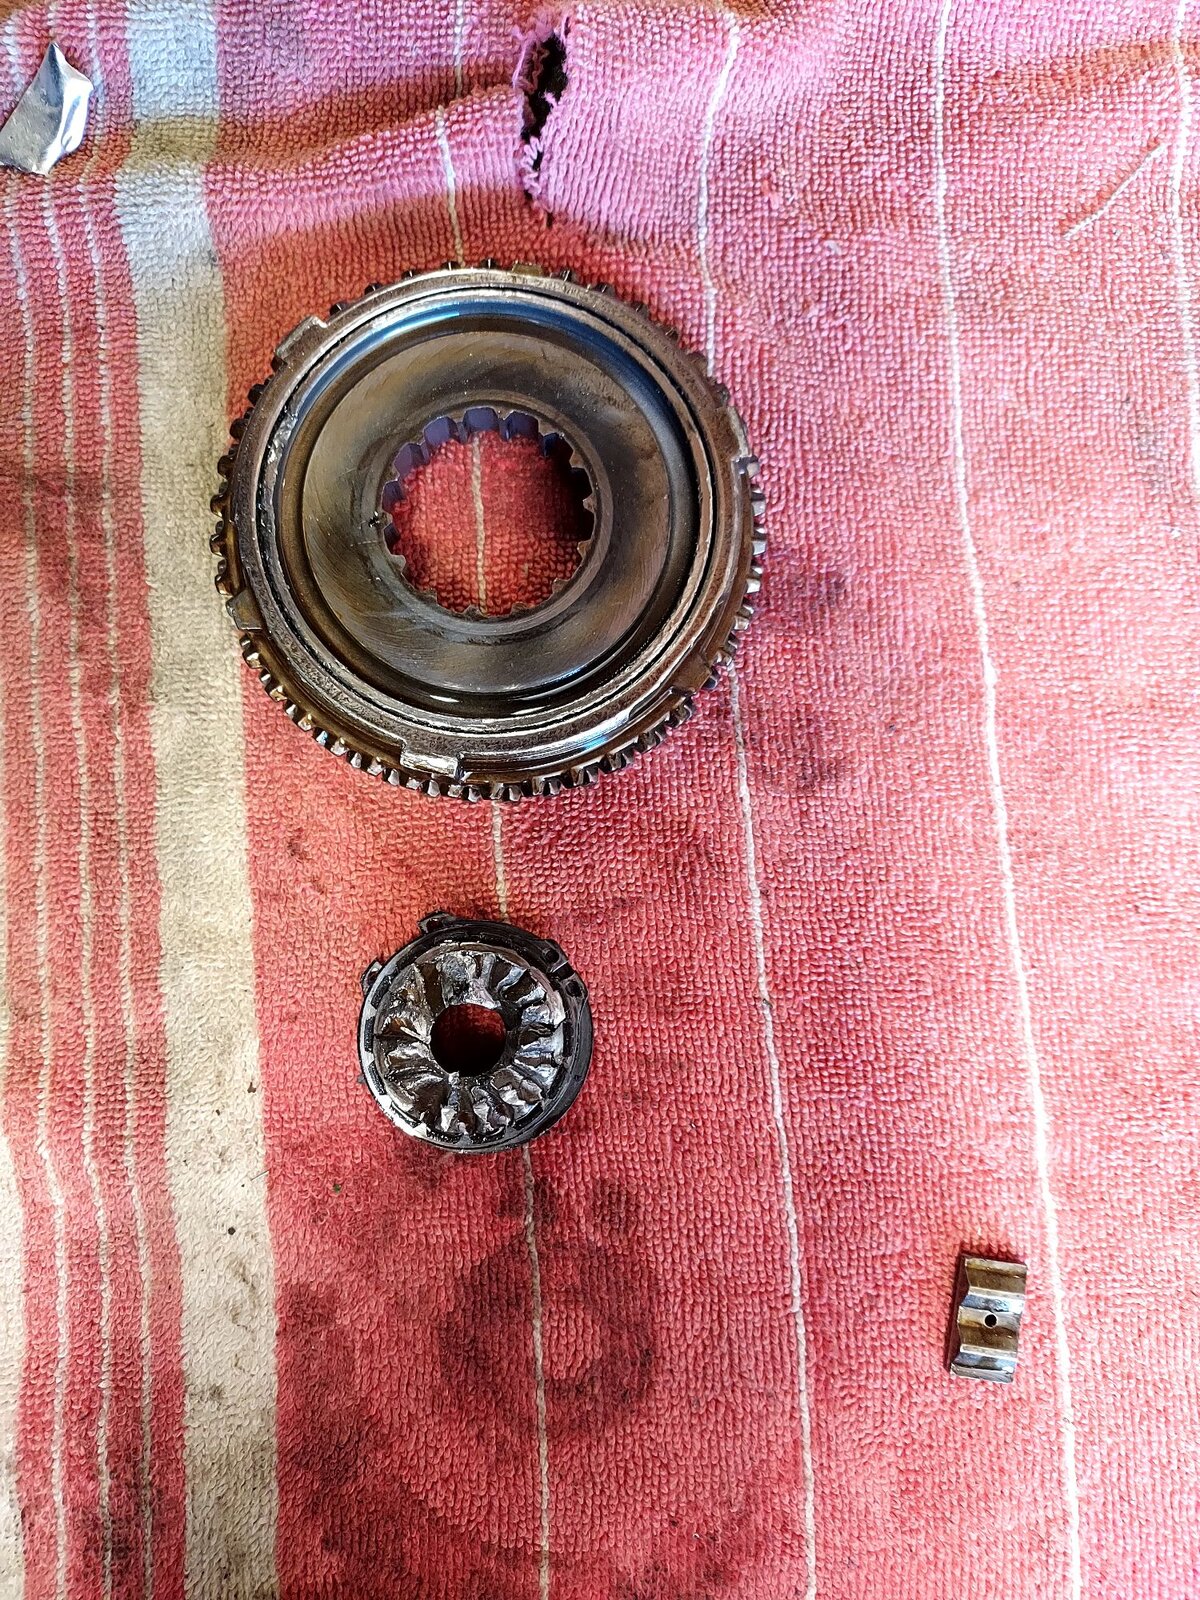 Clutch gear shaft broken NV 4500.jpeg